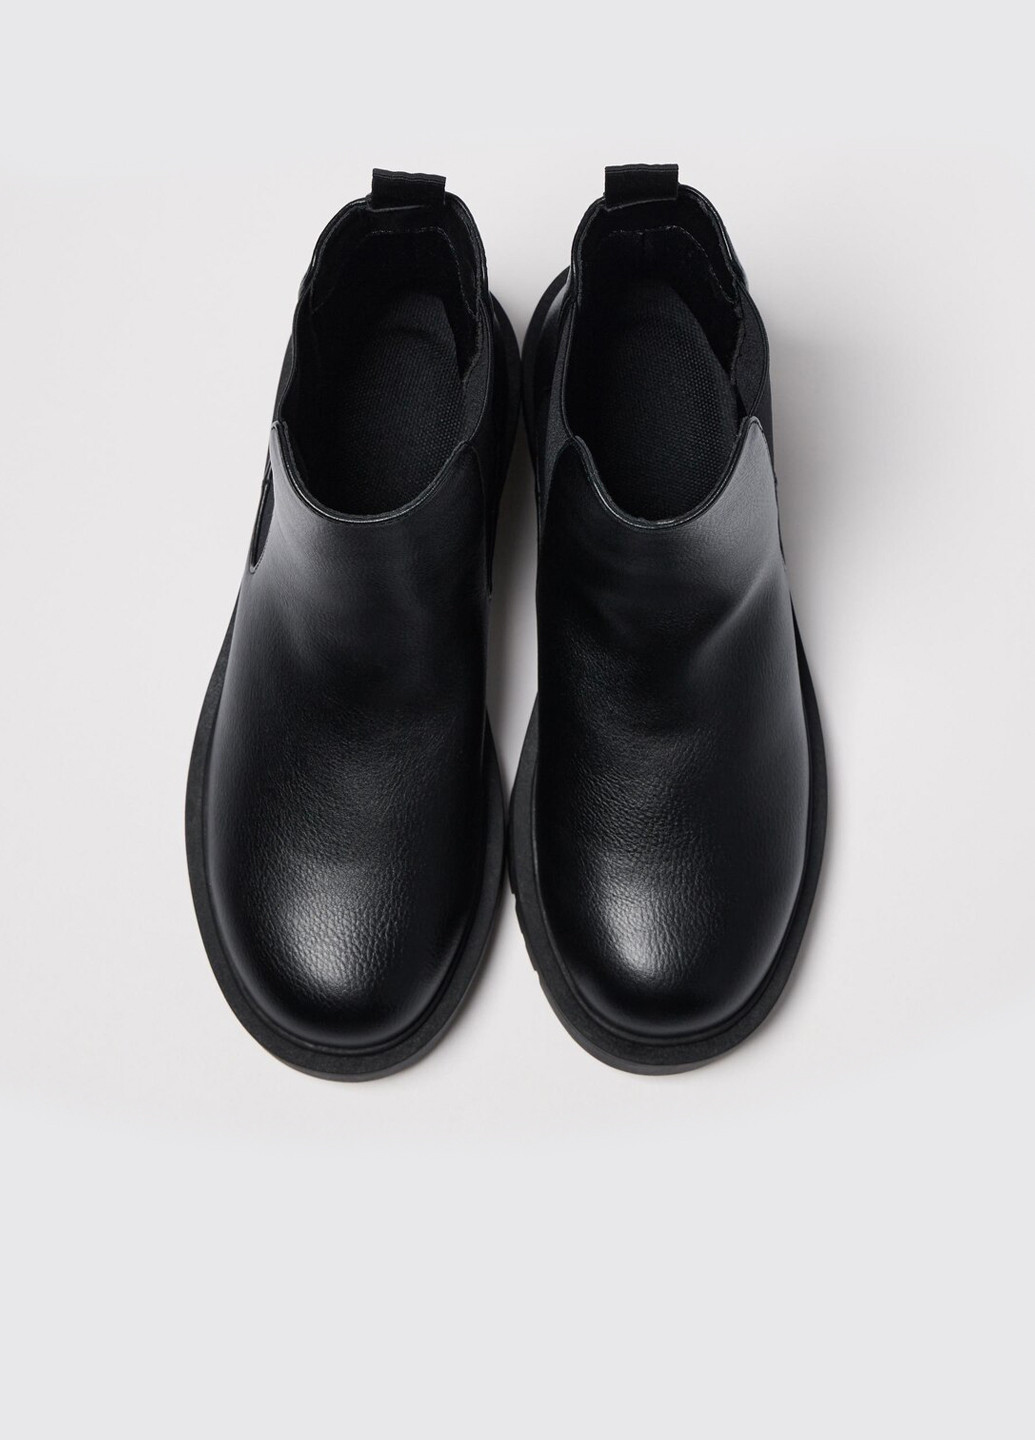 Осенние ботинки челси Uniqlo без декора из искусственной кожи